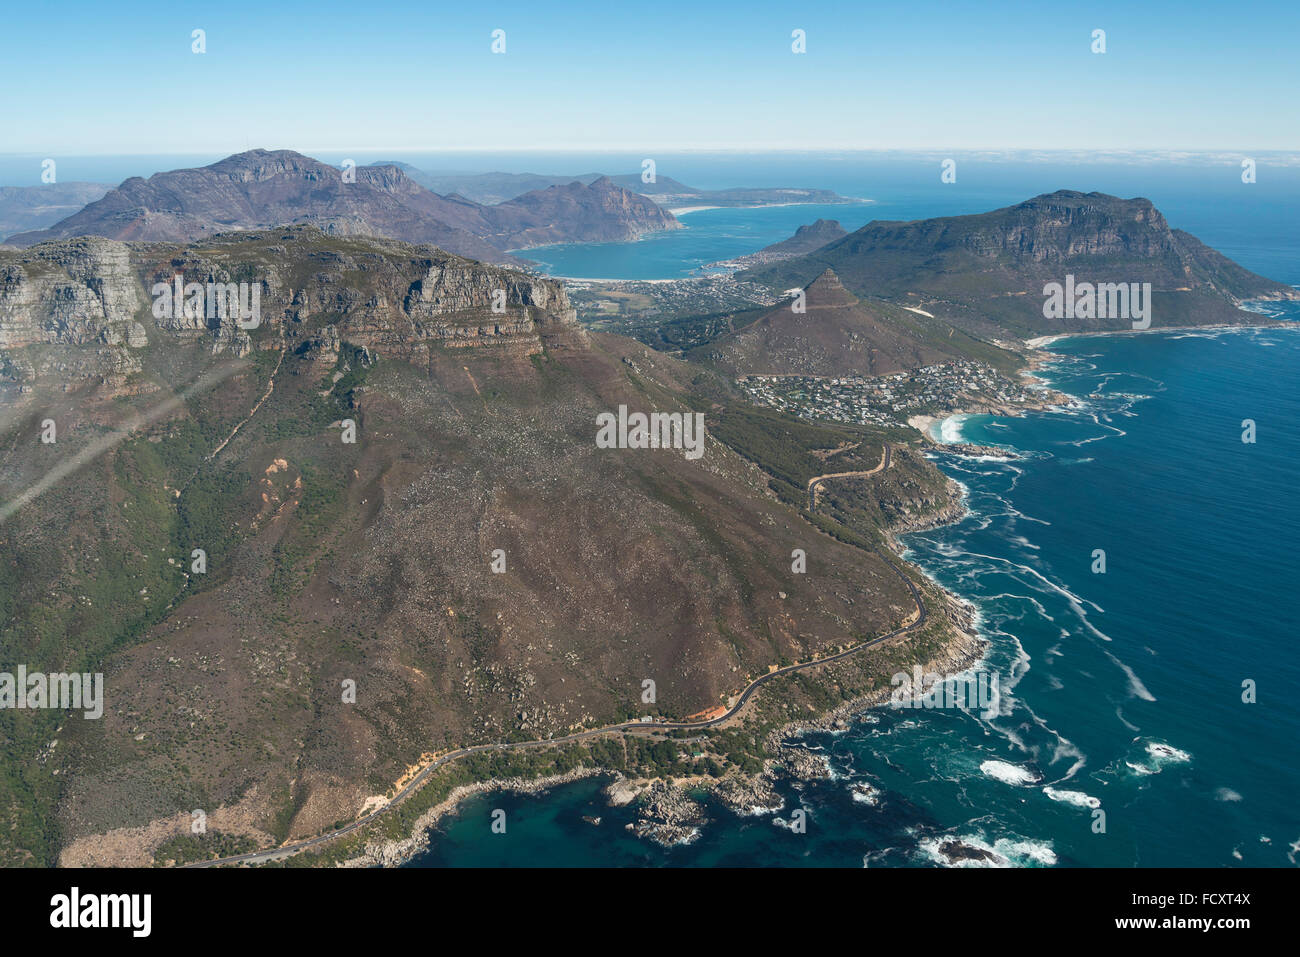 Vue aérienne de la péninsule du Cap, ville du Cap, la municipalité métropolitaine Province de Western Cape, Afrique du Sud Banque D'Images